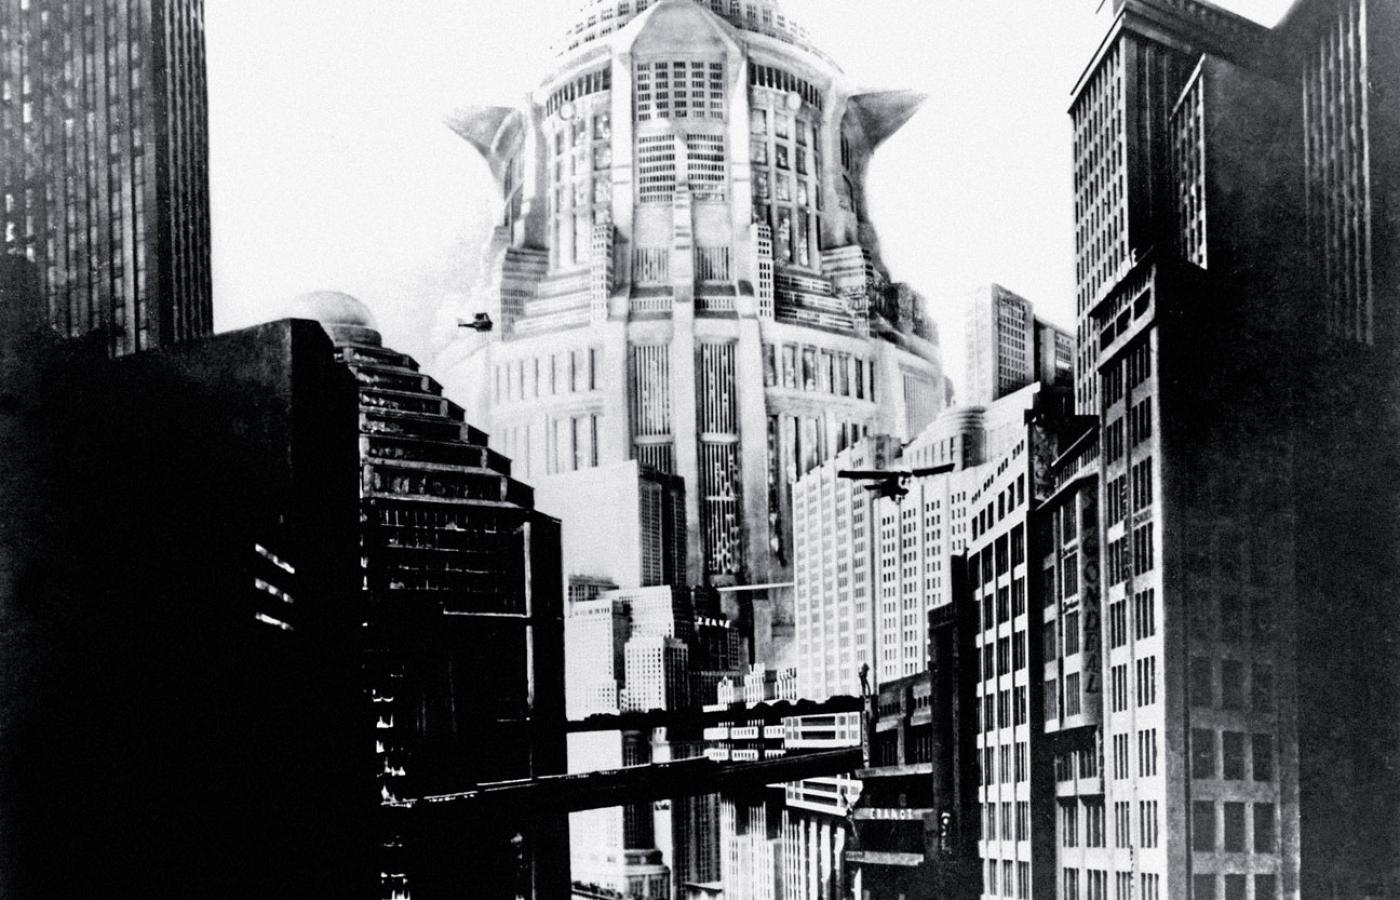 Kadr z filmu Fritza Langa „Metropolis” z 1927 r. Mroczna wizja miasta przyszłości.